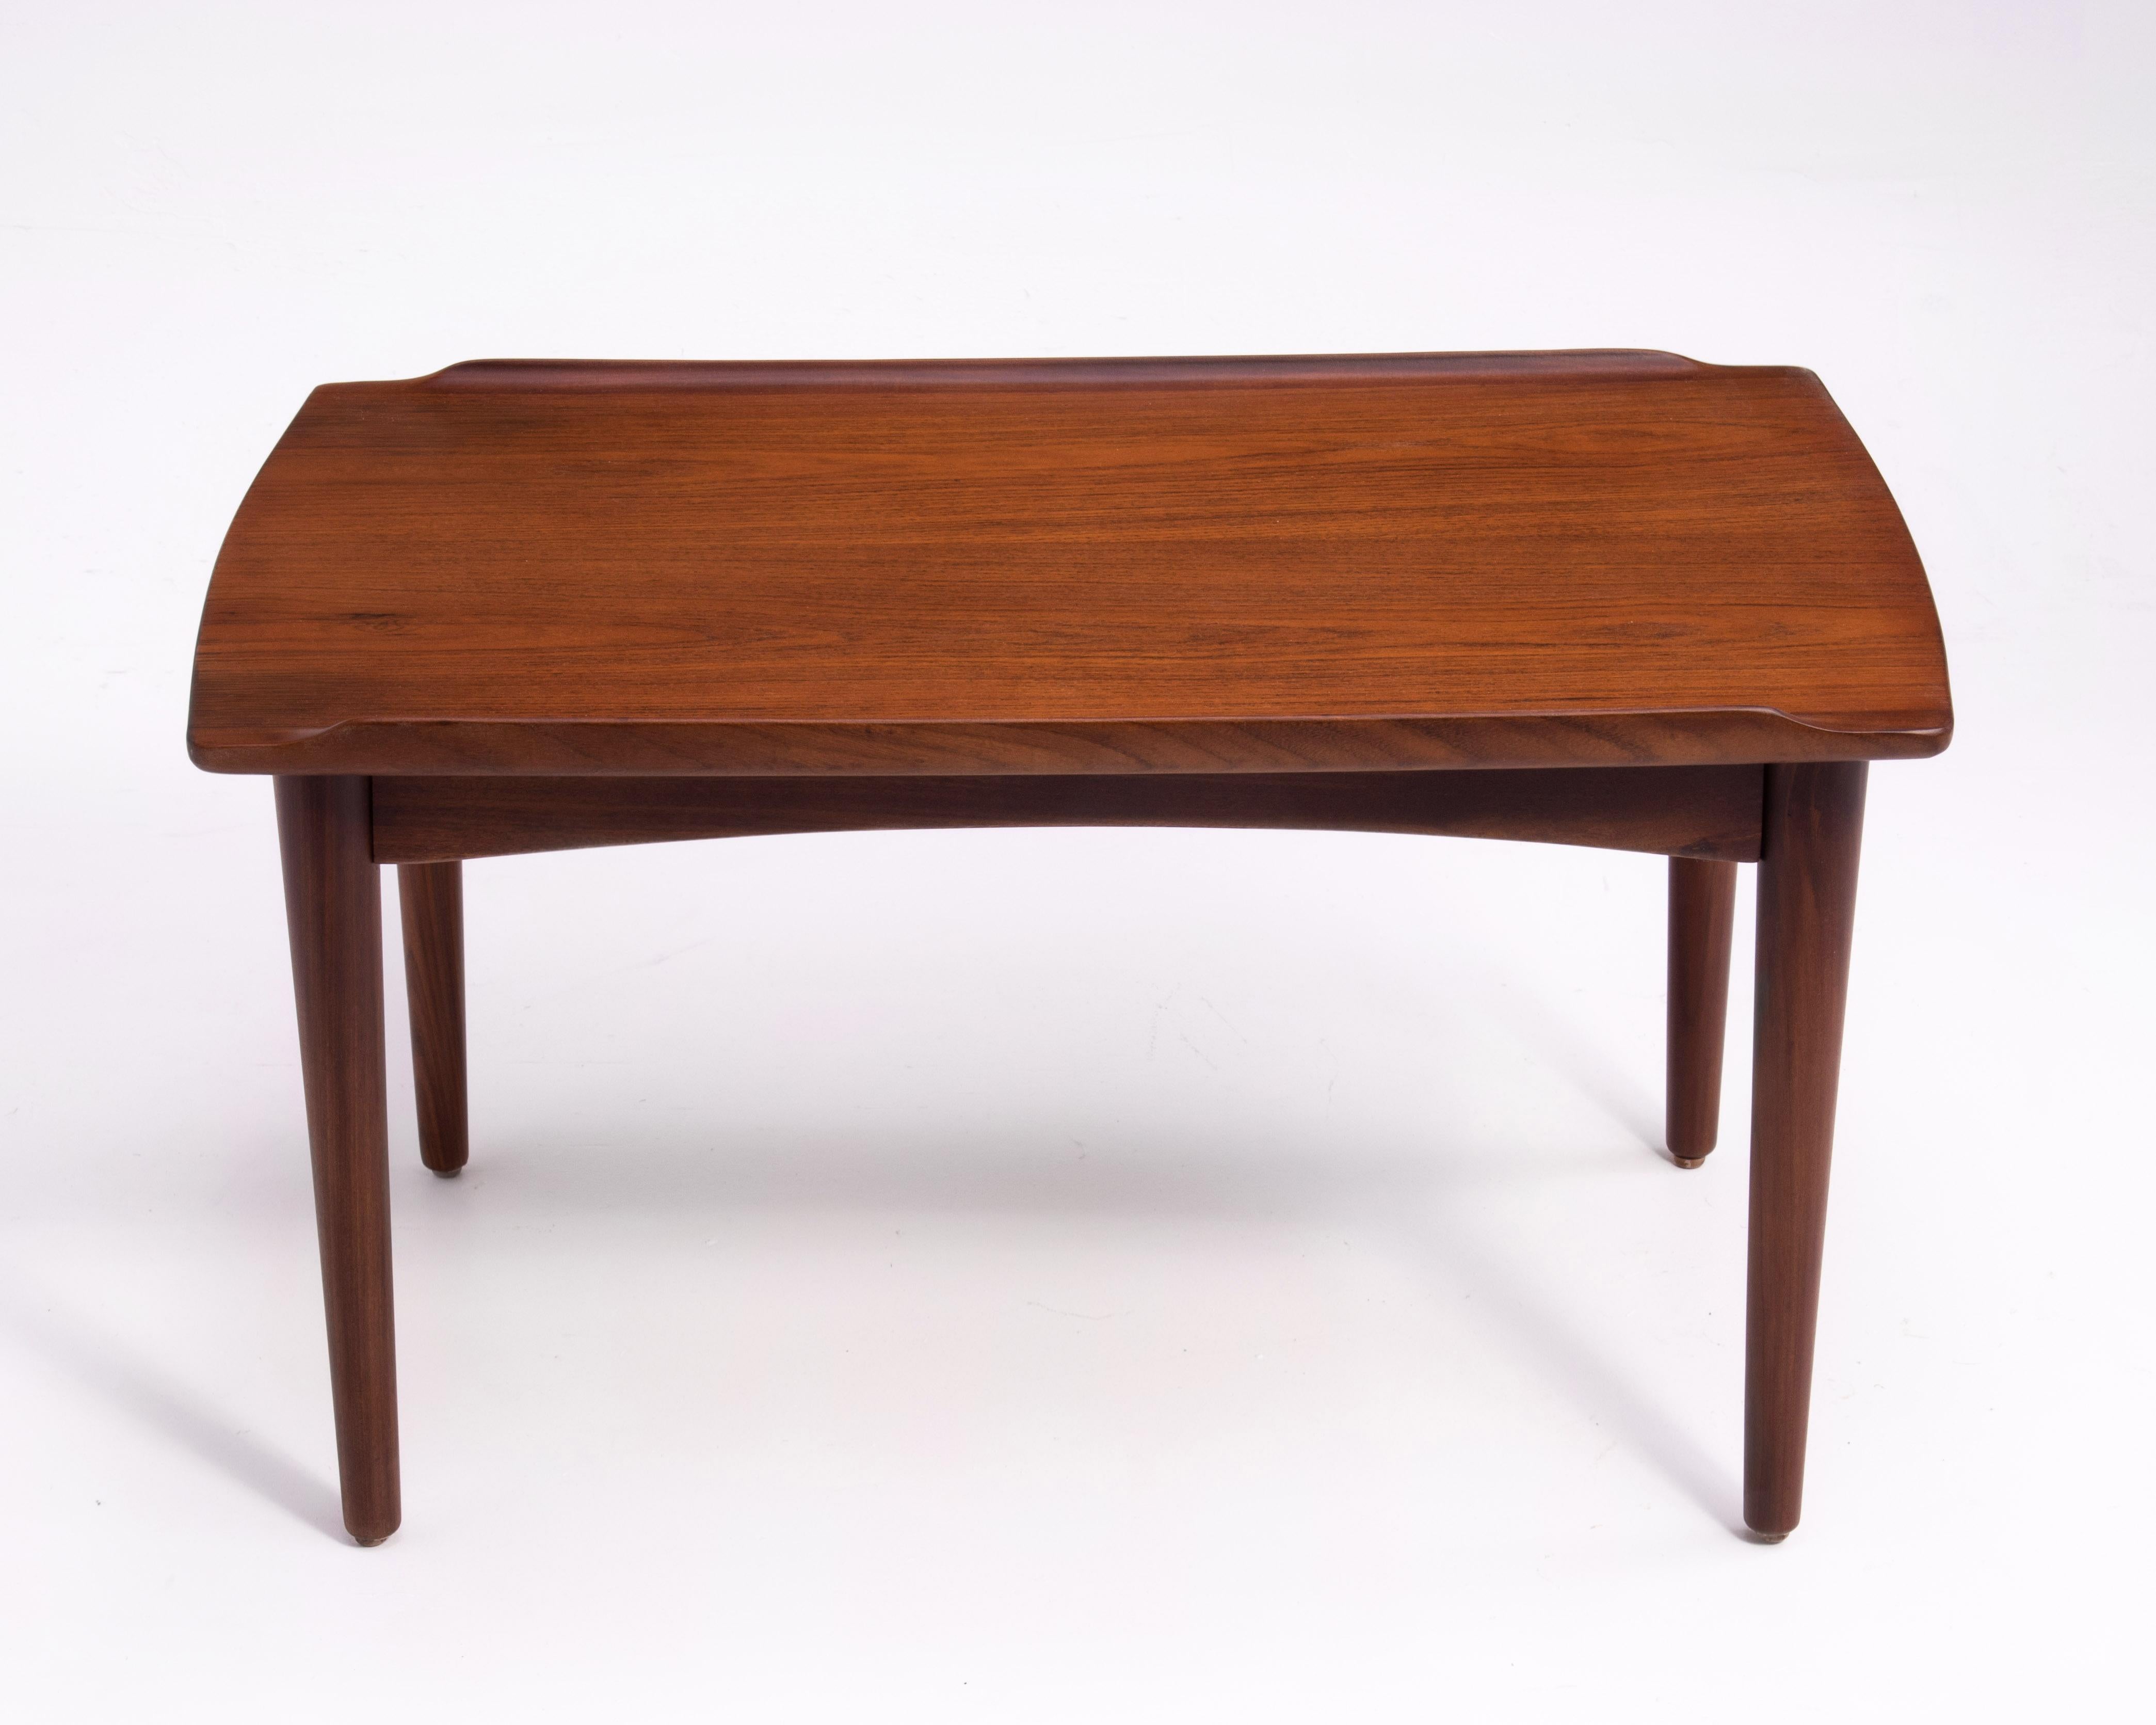 Danish Modern Teak Dowel Leg Side Table After Grete Jalk Marked B. J. 1970s For Sale 1